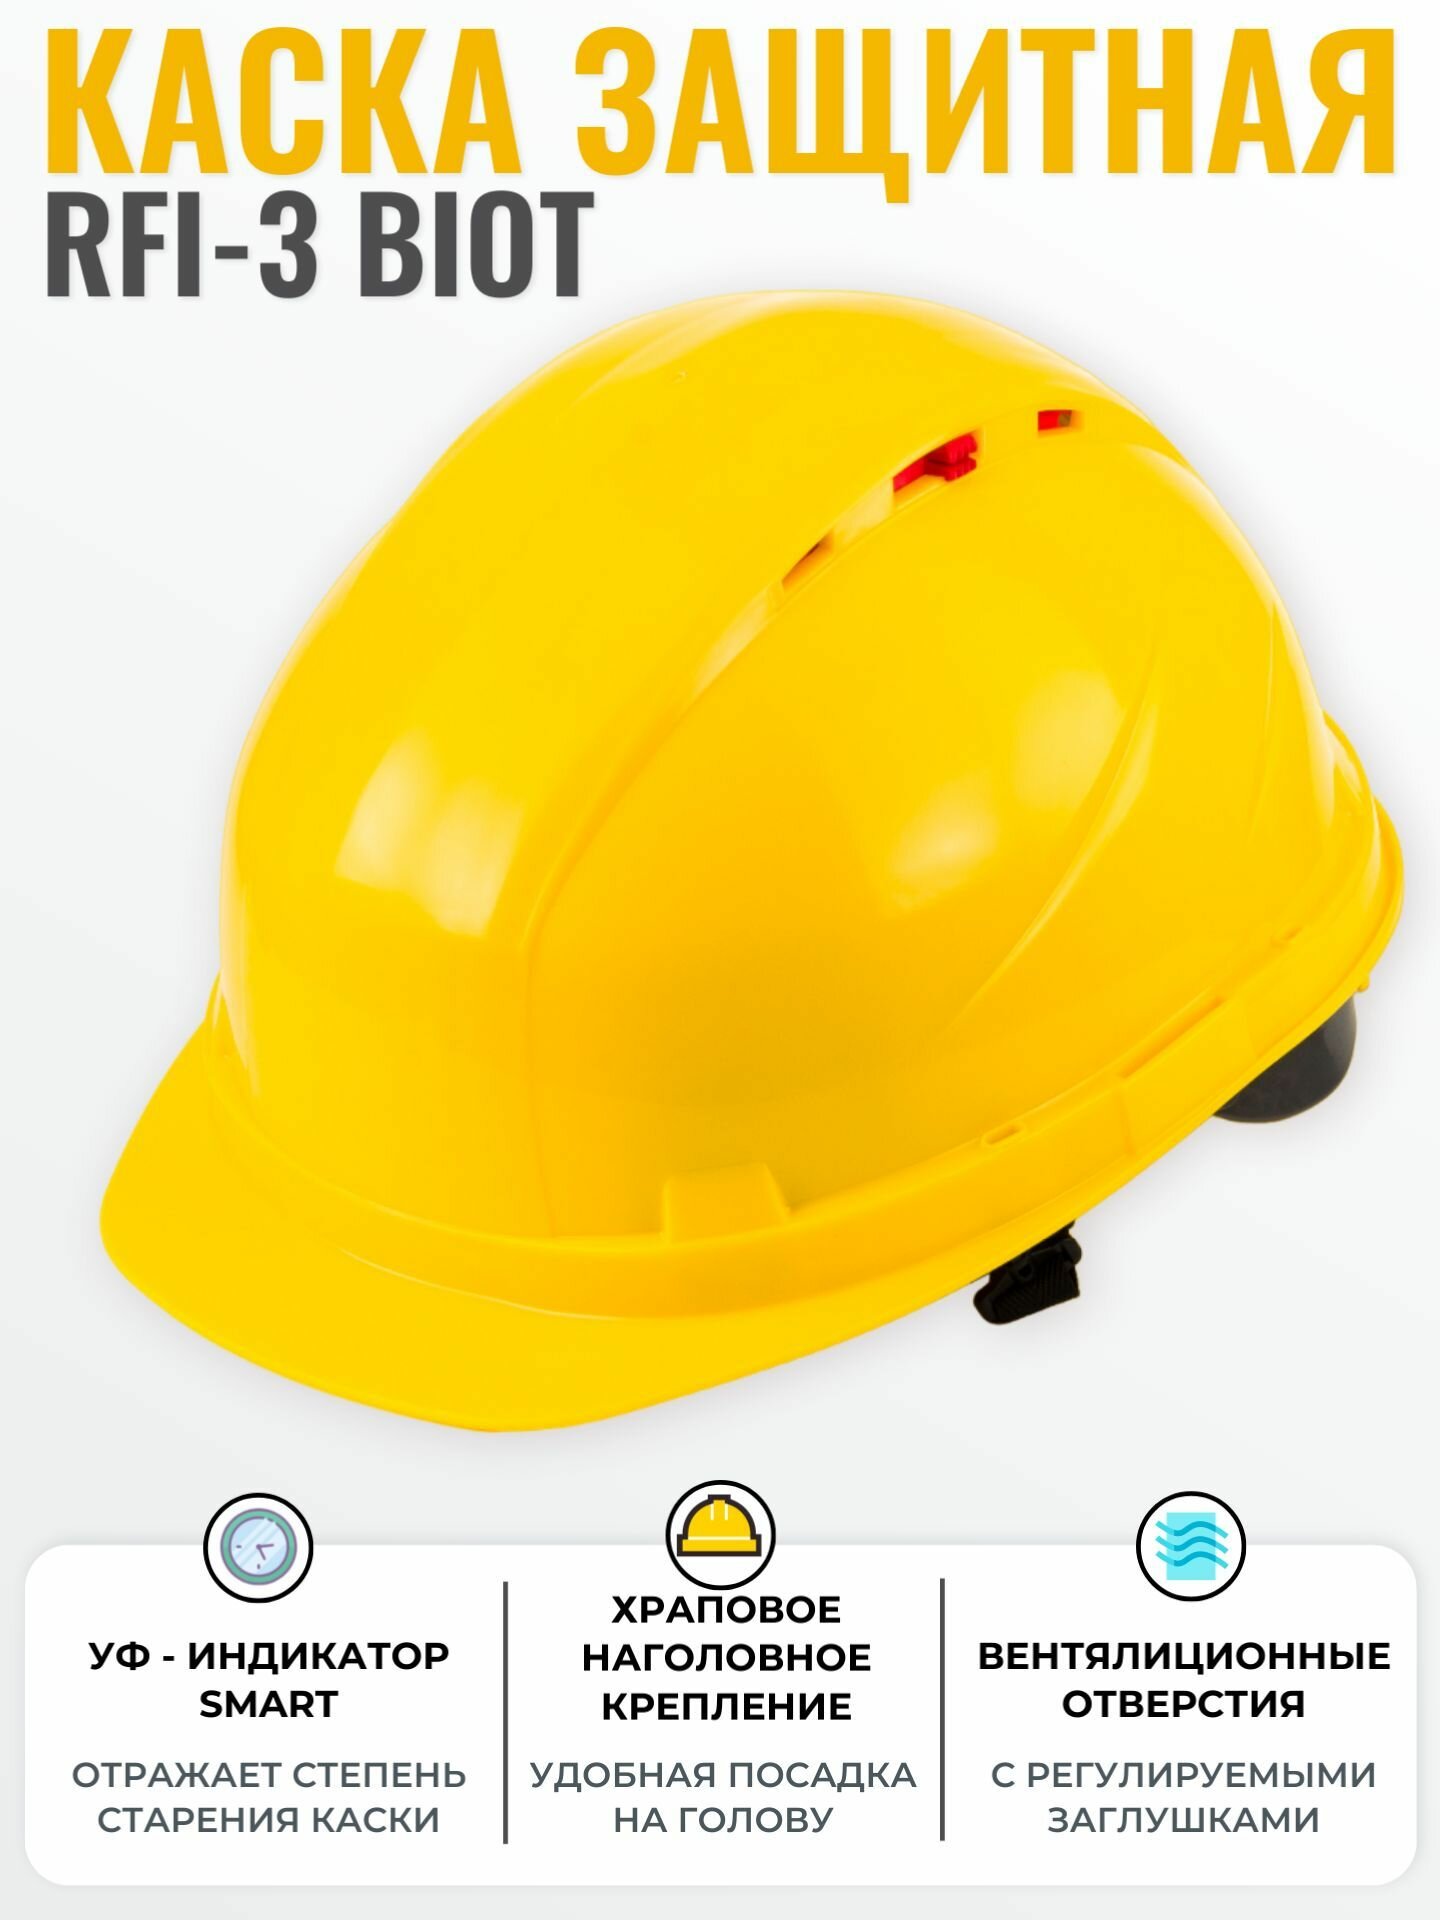 Каска строительная РОСОМЗ RFI-3 BIOT желтая, УФ-индикатор старения каски, храповик